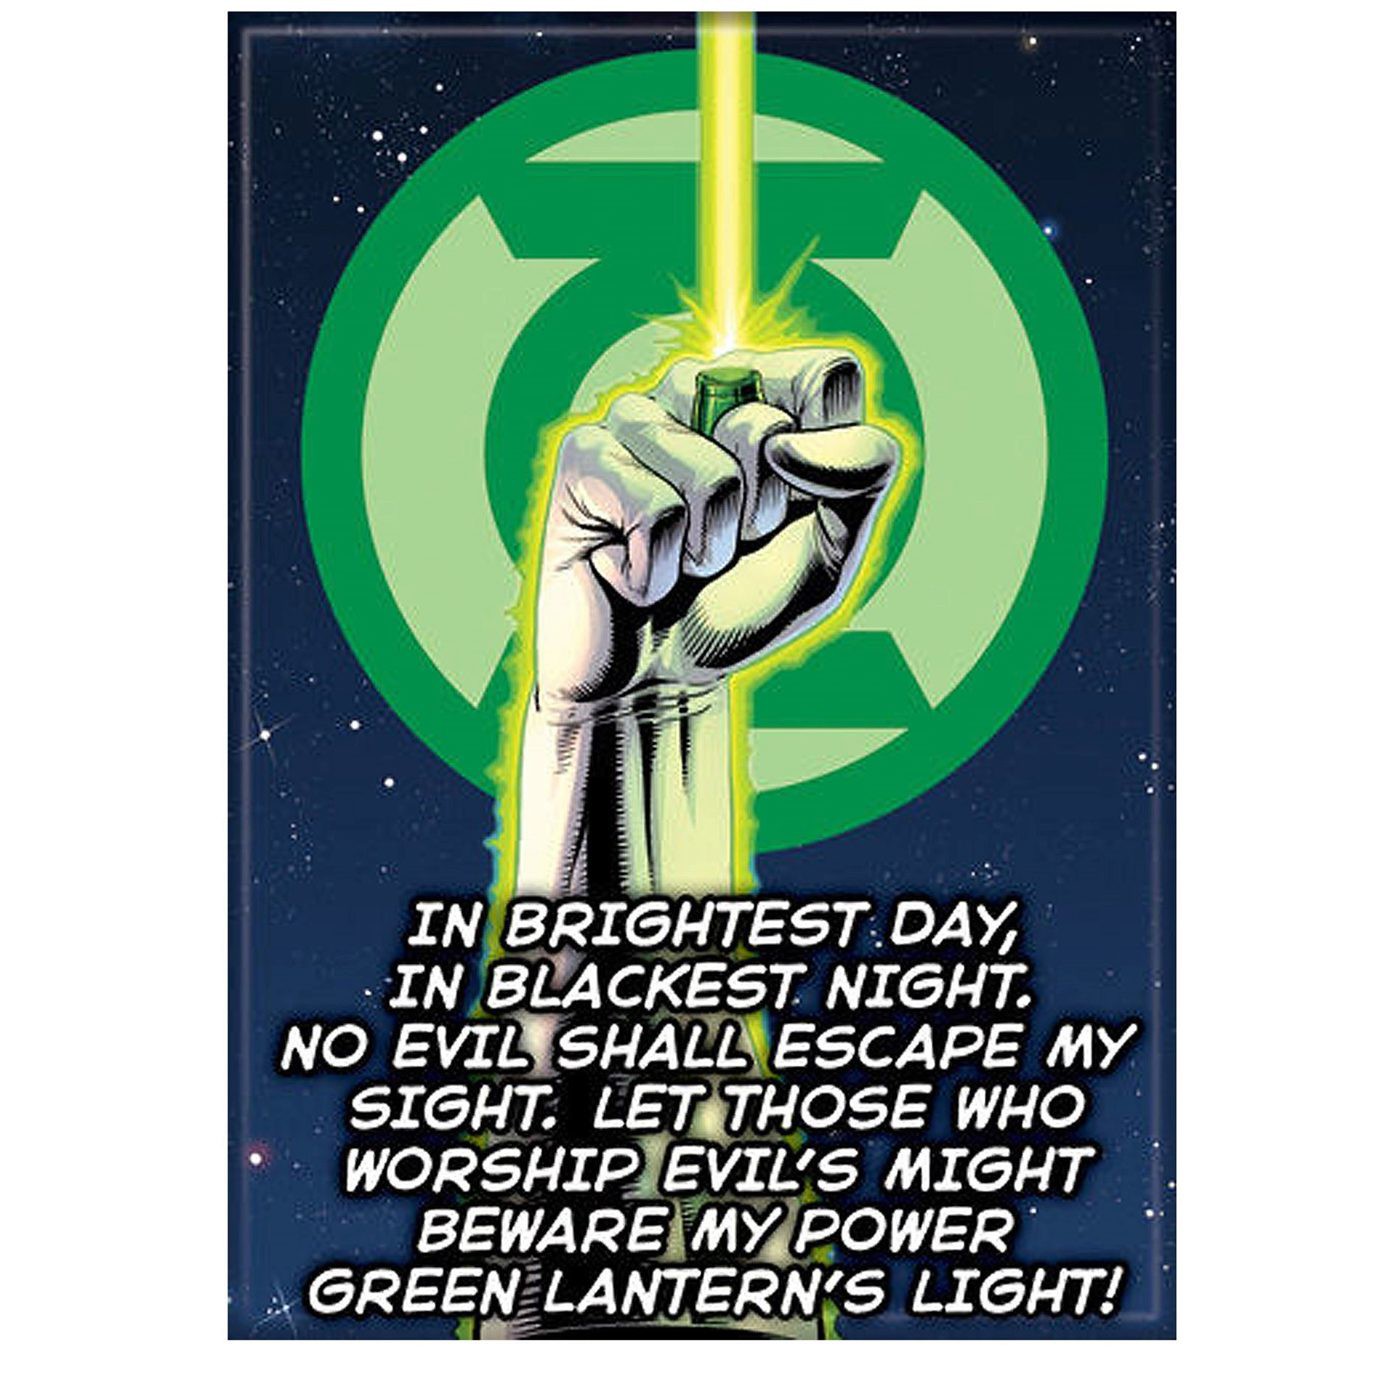 green lantern oath on billboard in arrow